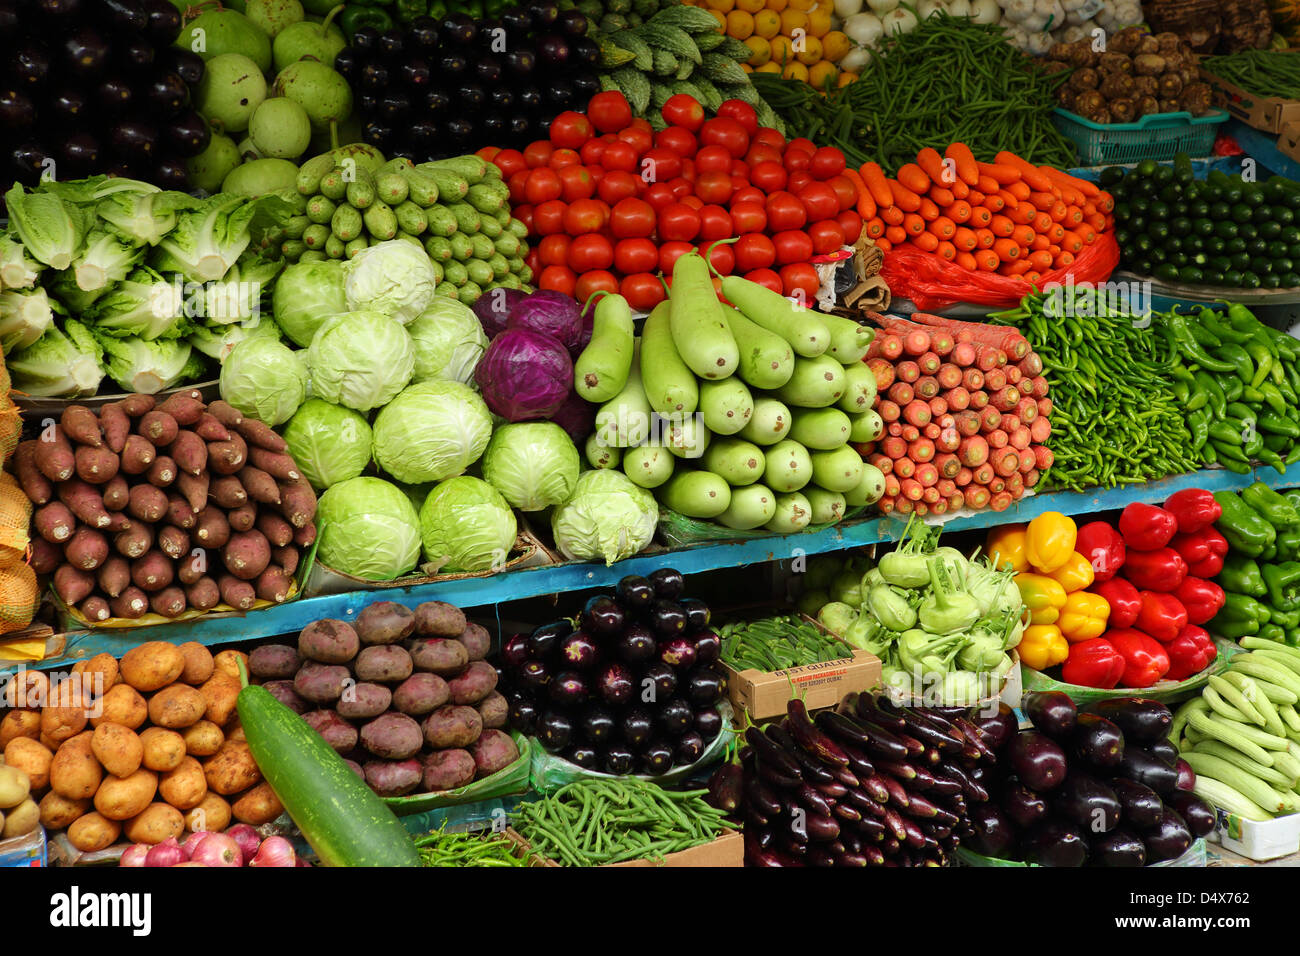 Fresh produce on display at market, Dubai, United Arab Emirates Stock Photo